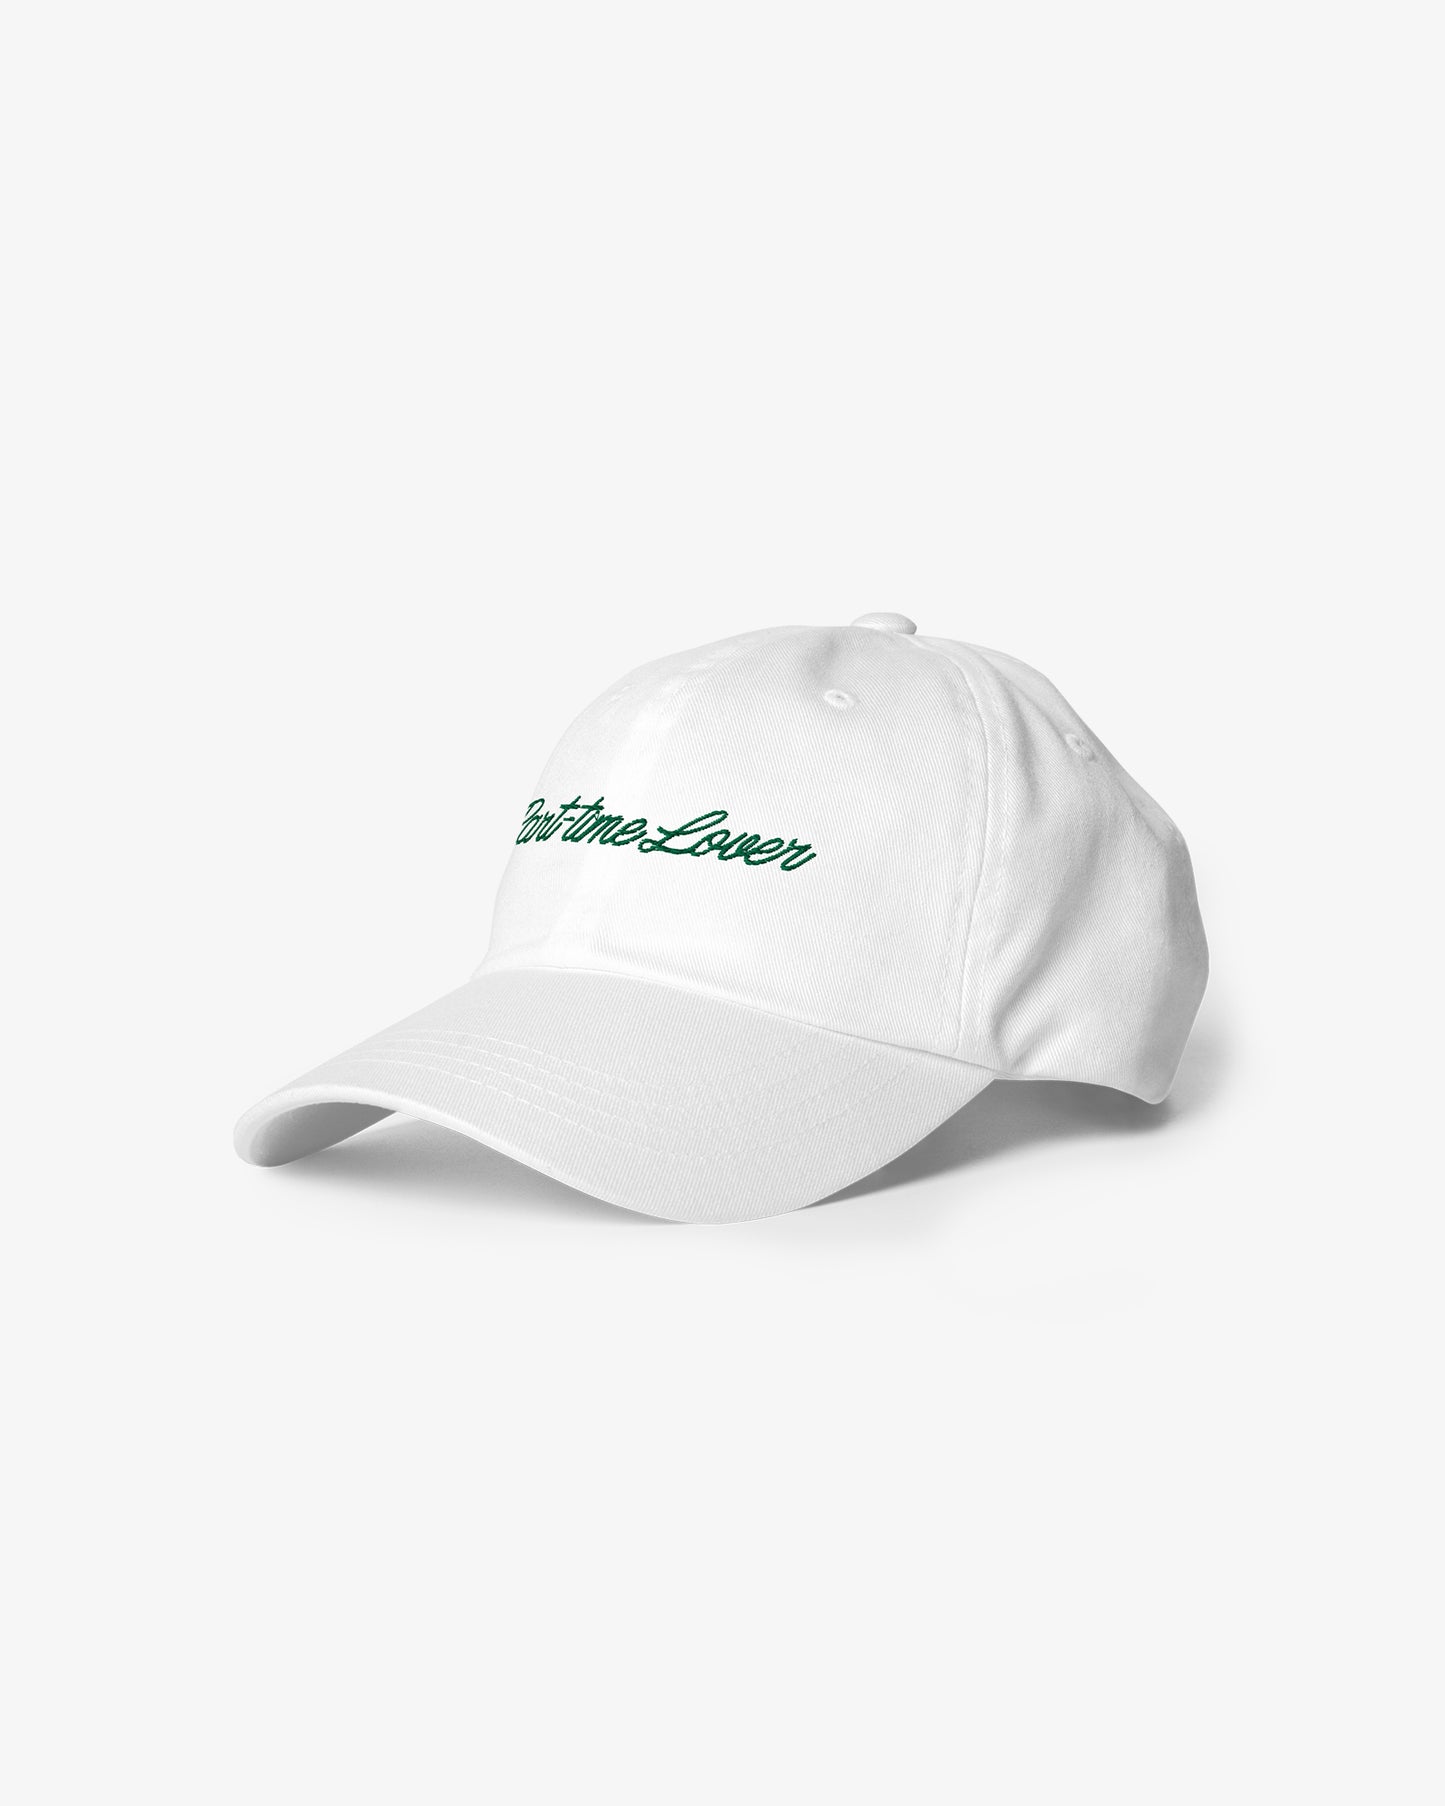 Lover Script Dad Hat - White/Green